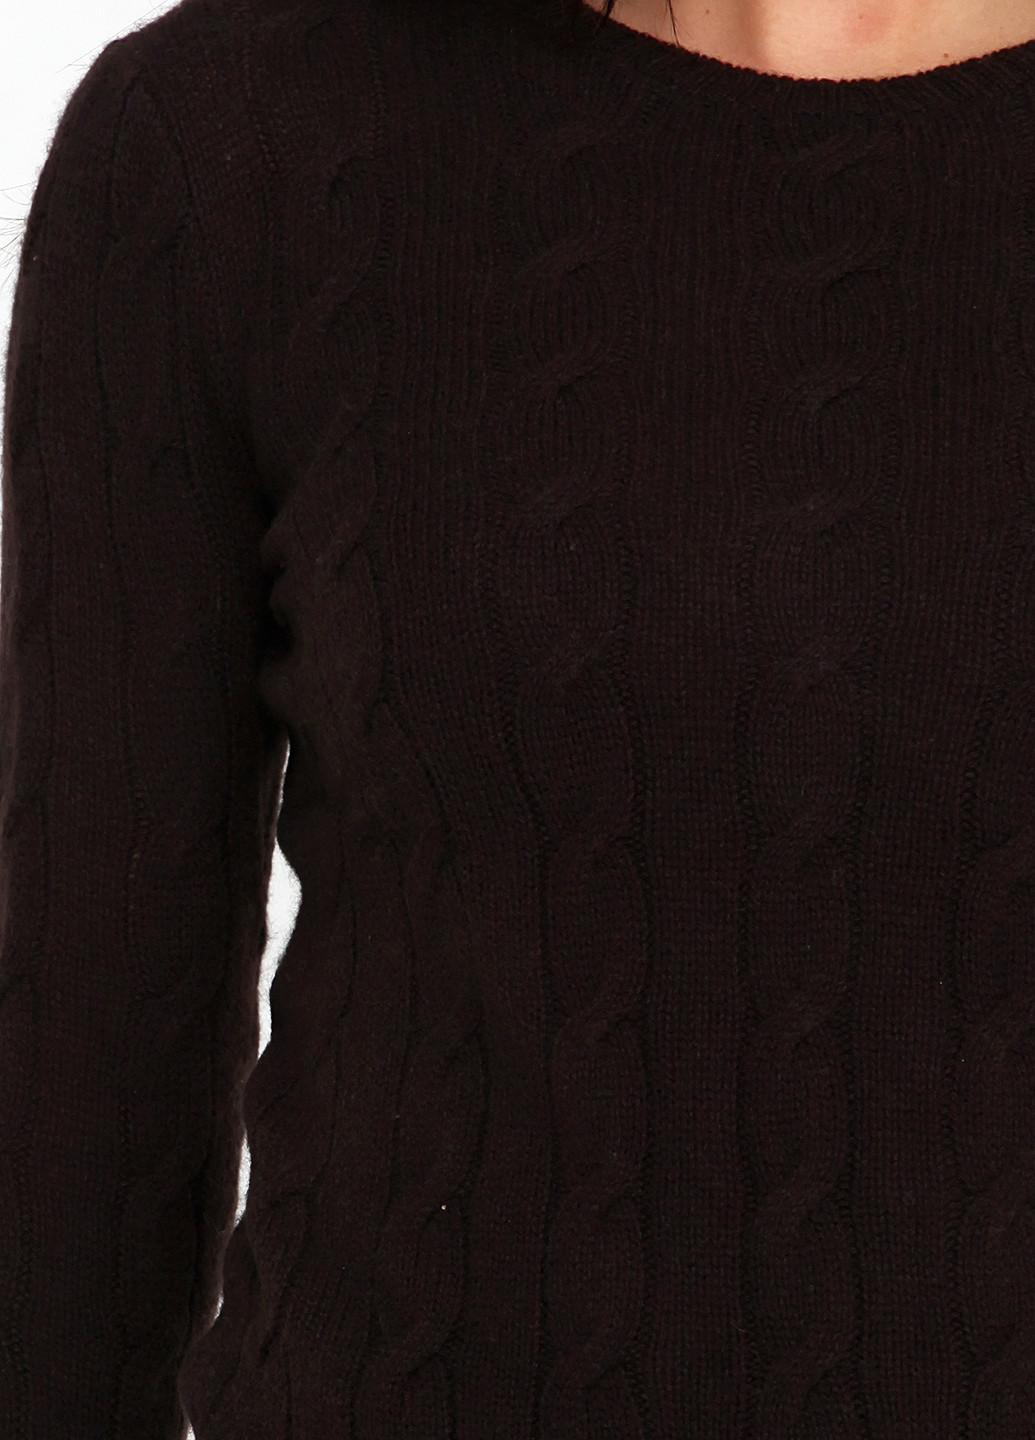 Темно-коричневый демисезонный джемпер джемпер Ralph Lauren